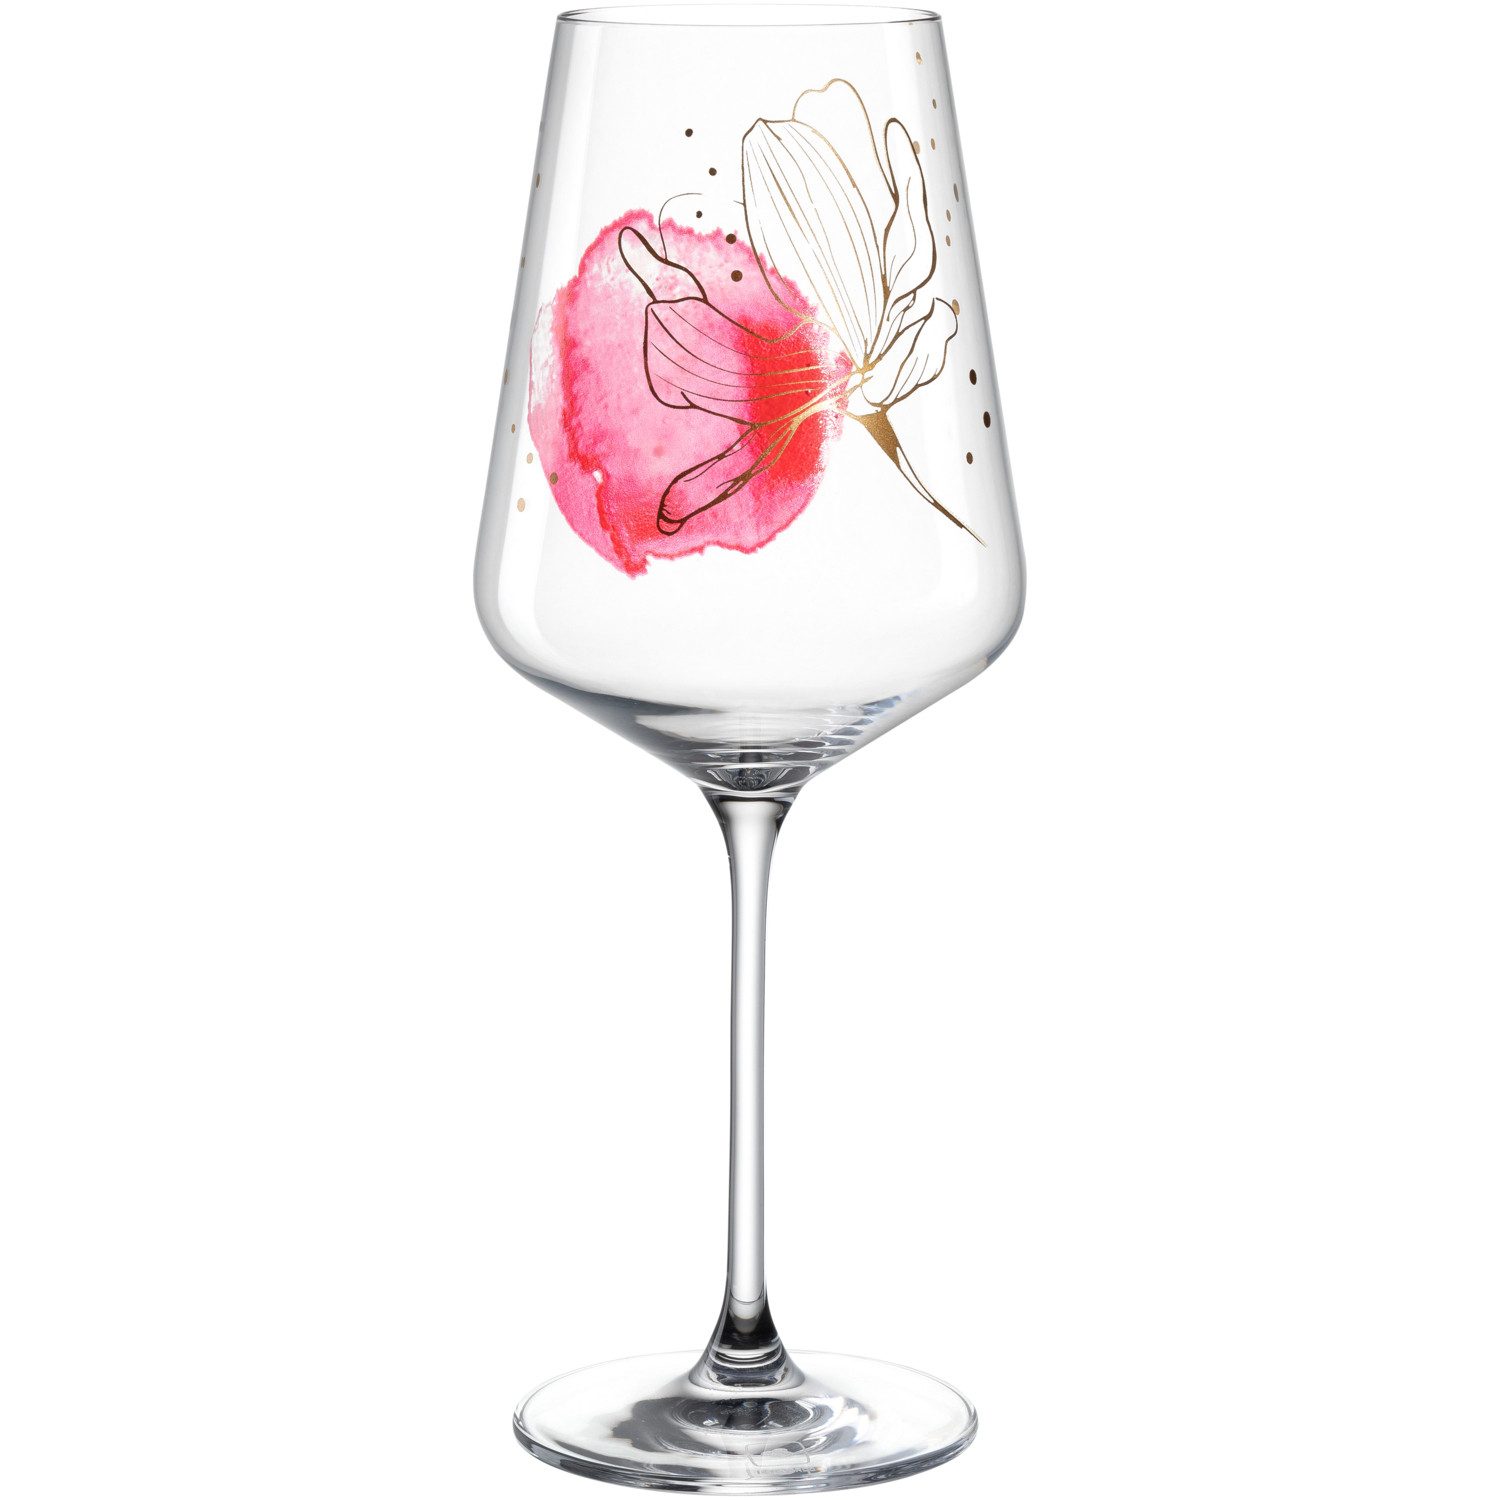 LEONARDO Aperitifglas Presente, Kristallglas, 4 Gläser, ideal für Aperitif, Spülmaschinengeeignet